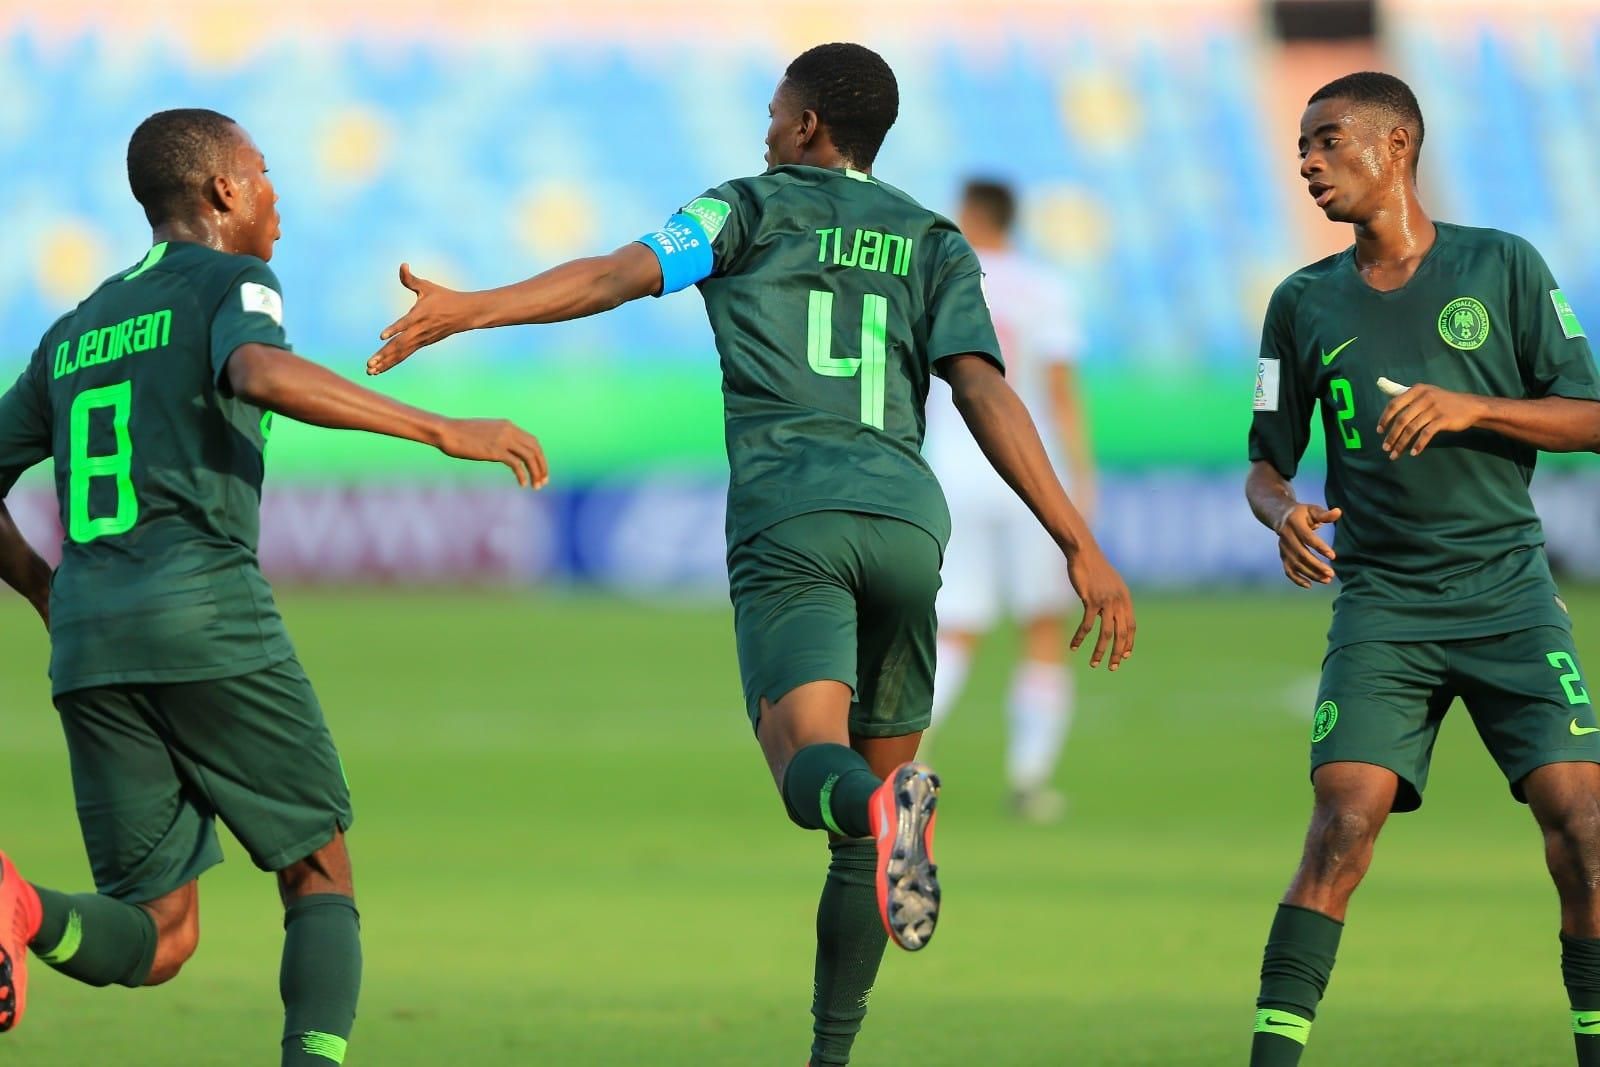 Seleção Nacional sub-17 Feminina enfrenta Suíça em jogos de